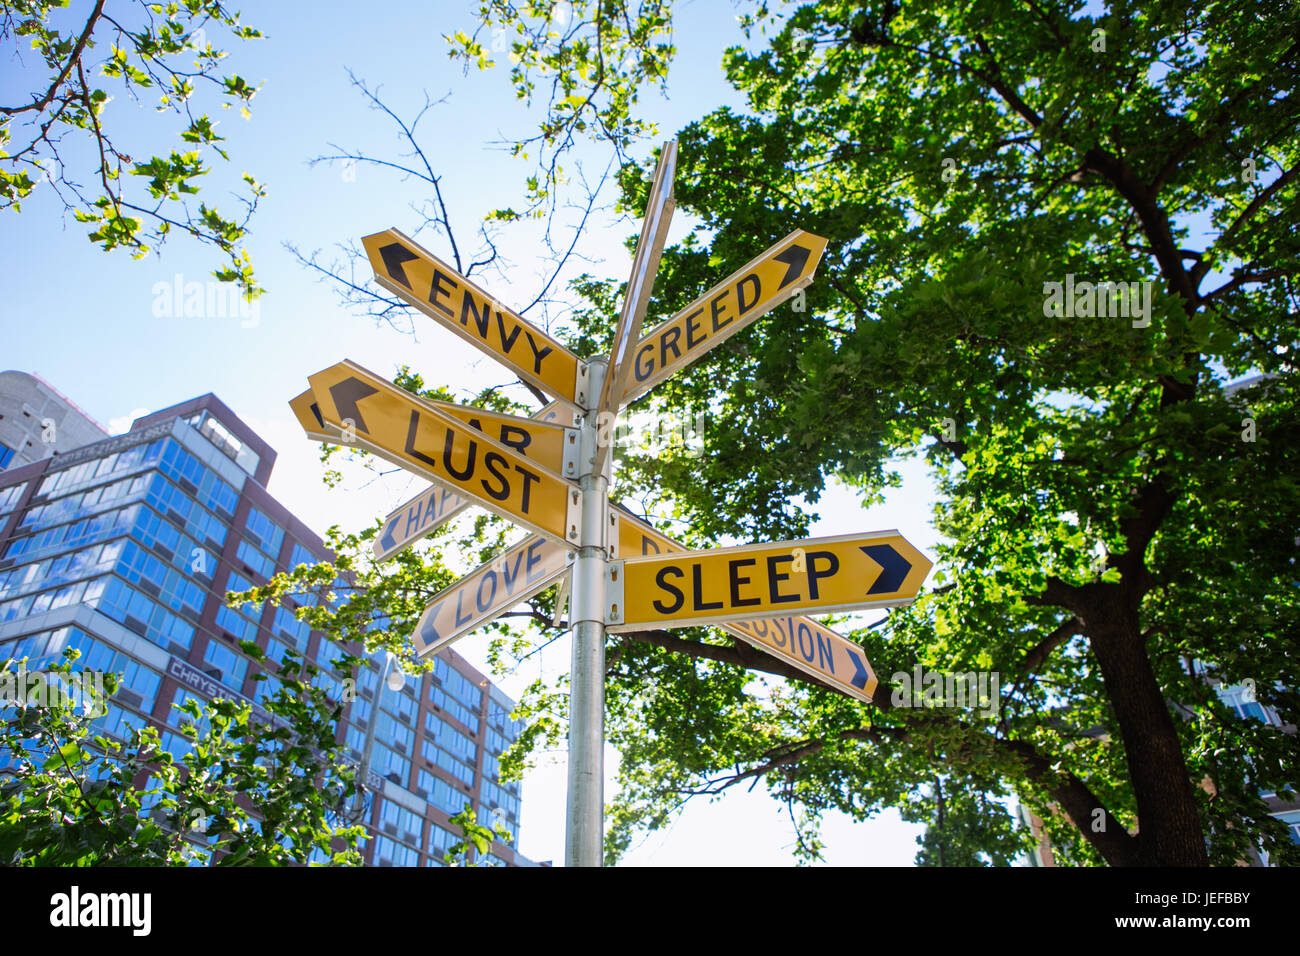 Art Street sign de l'envie, la cupidité, la luxure, le sommeil à Manhattan, New York, USA Banque D'Images